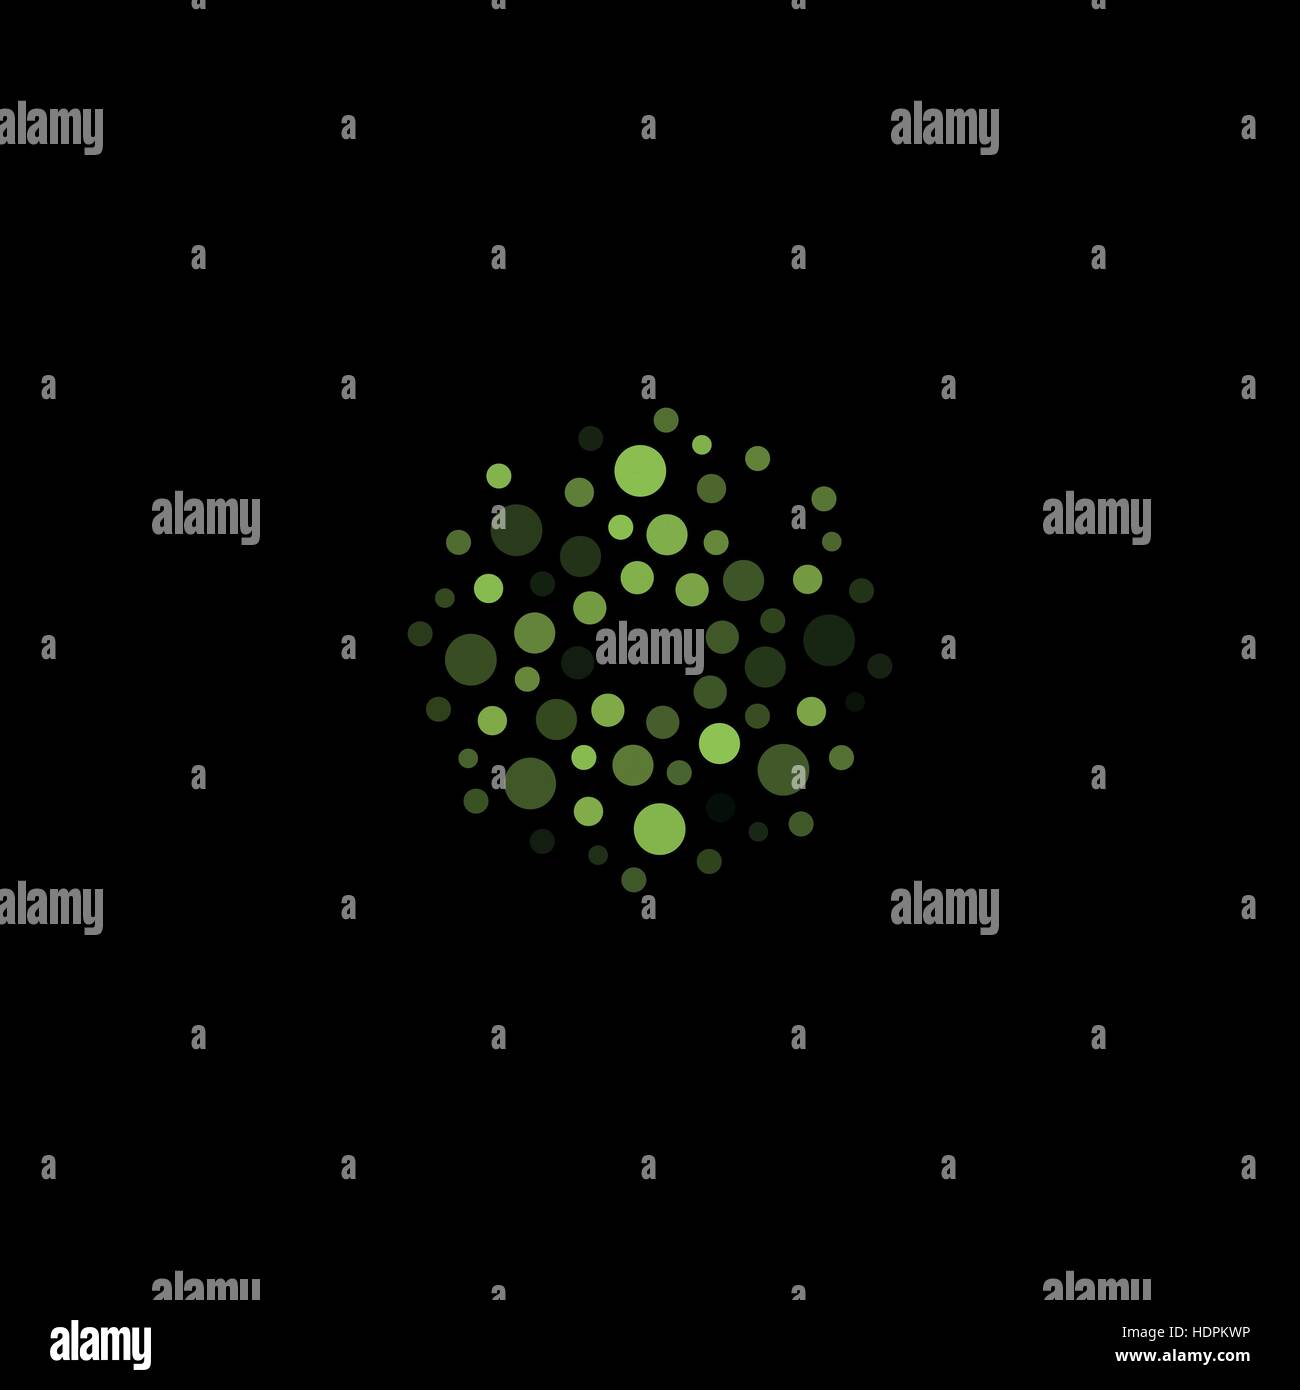 Abstrakt Kreis Logo. Ungewöhnliche gepunktete Runde isolierte Chem Logo. Virus-Symbol. Grüne Pflanze. Symbolblume. Kugel-Zeichen. Vektorgrafik Keime. Stock Vektor